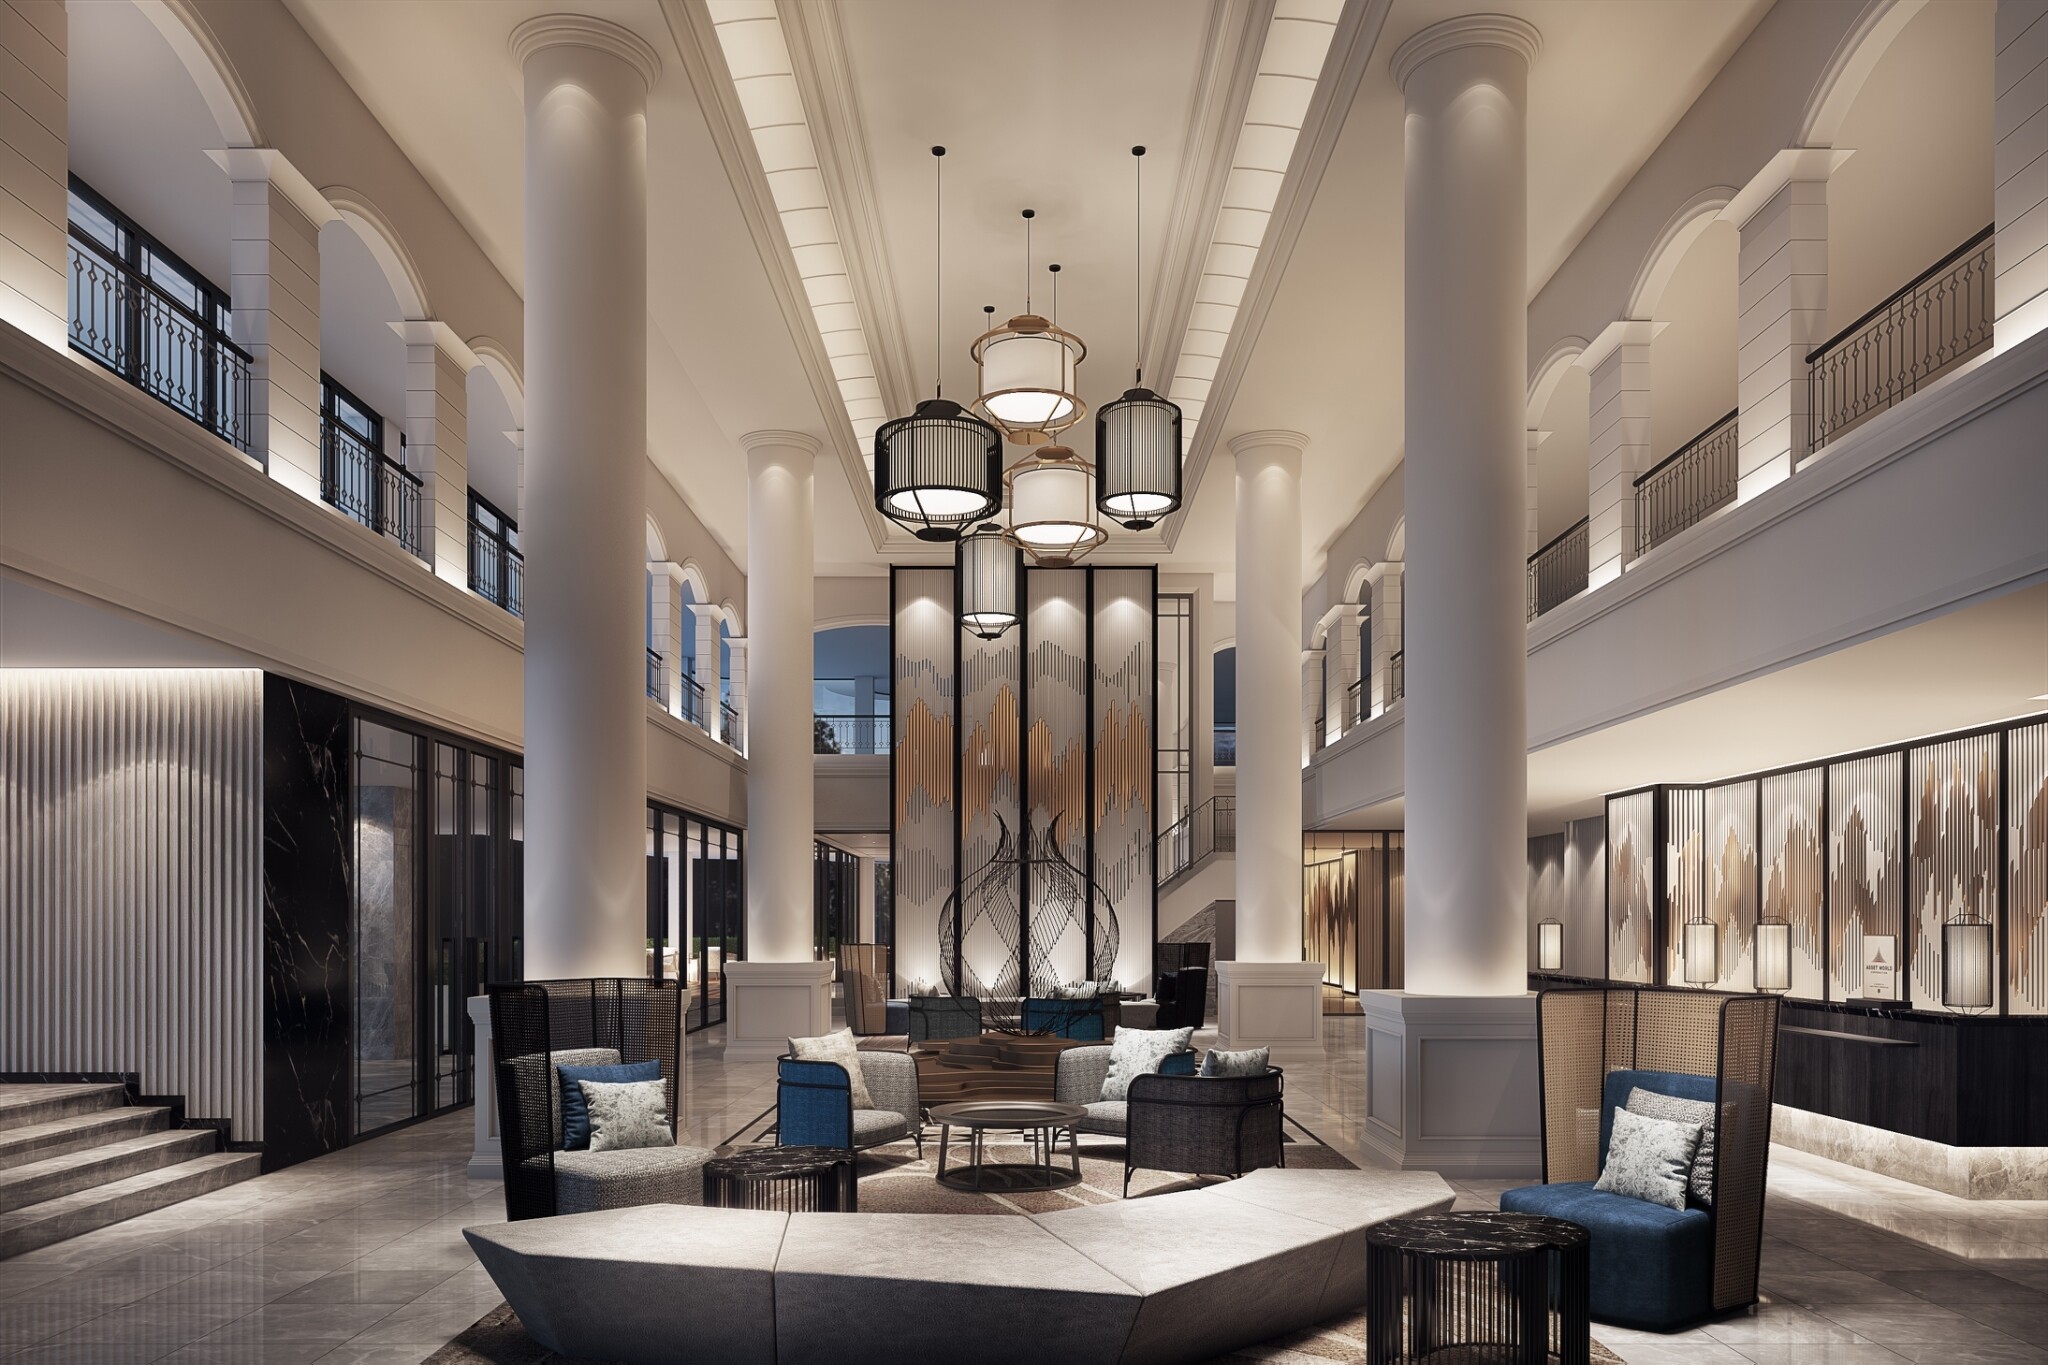 แมริออท อินเตอร์เนชั่นแนล เปิดตัวโรงแรมแห่งใหม่ใจกลางเมืองภูเก็ต โรงแรม คอร์ทยาร์ด แมริออท ภูเก็ต ทาวน์